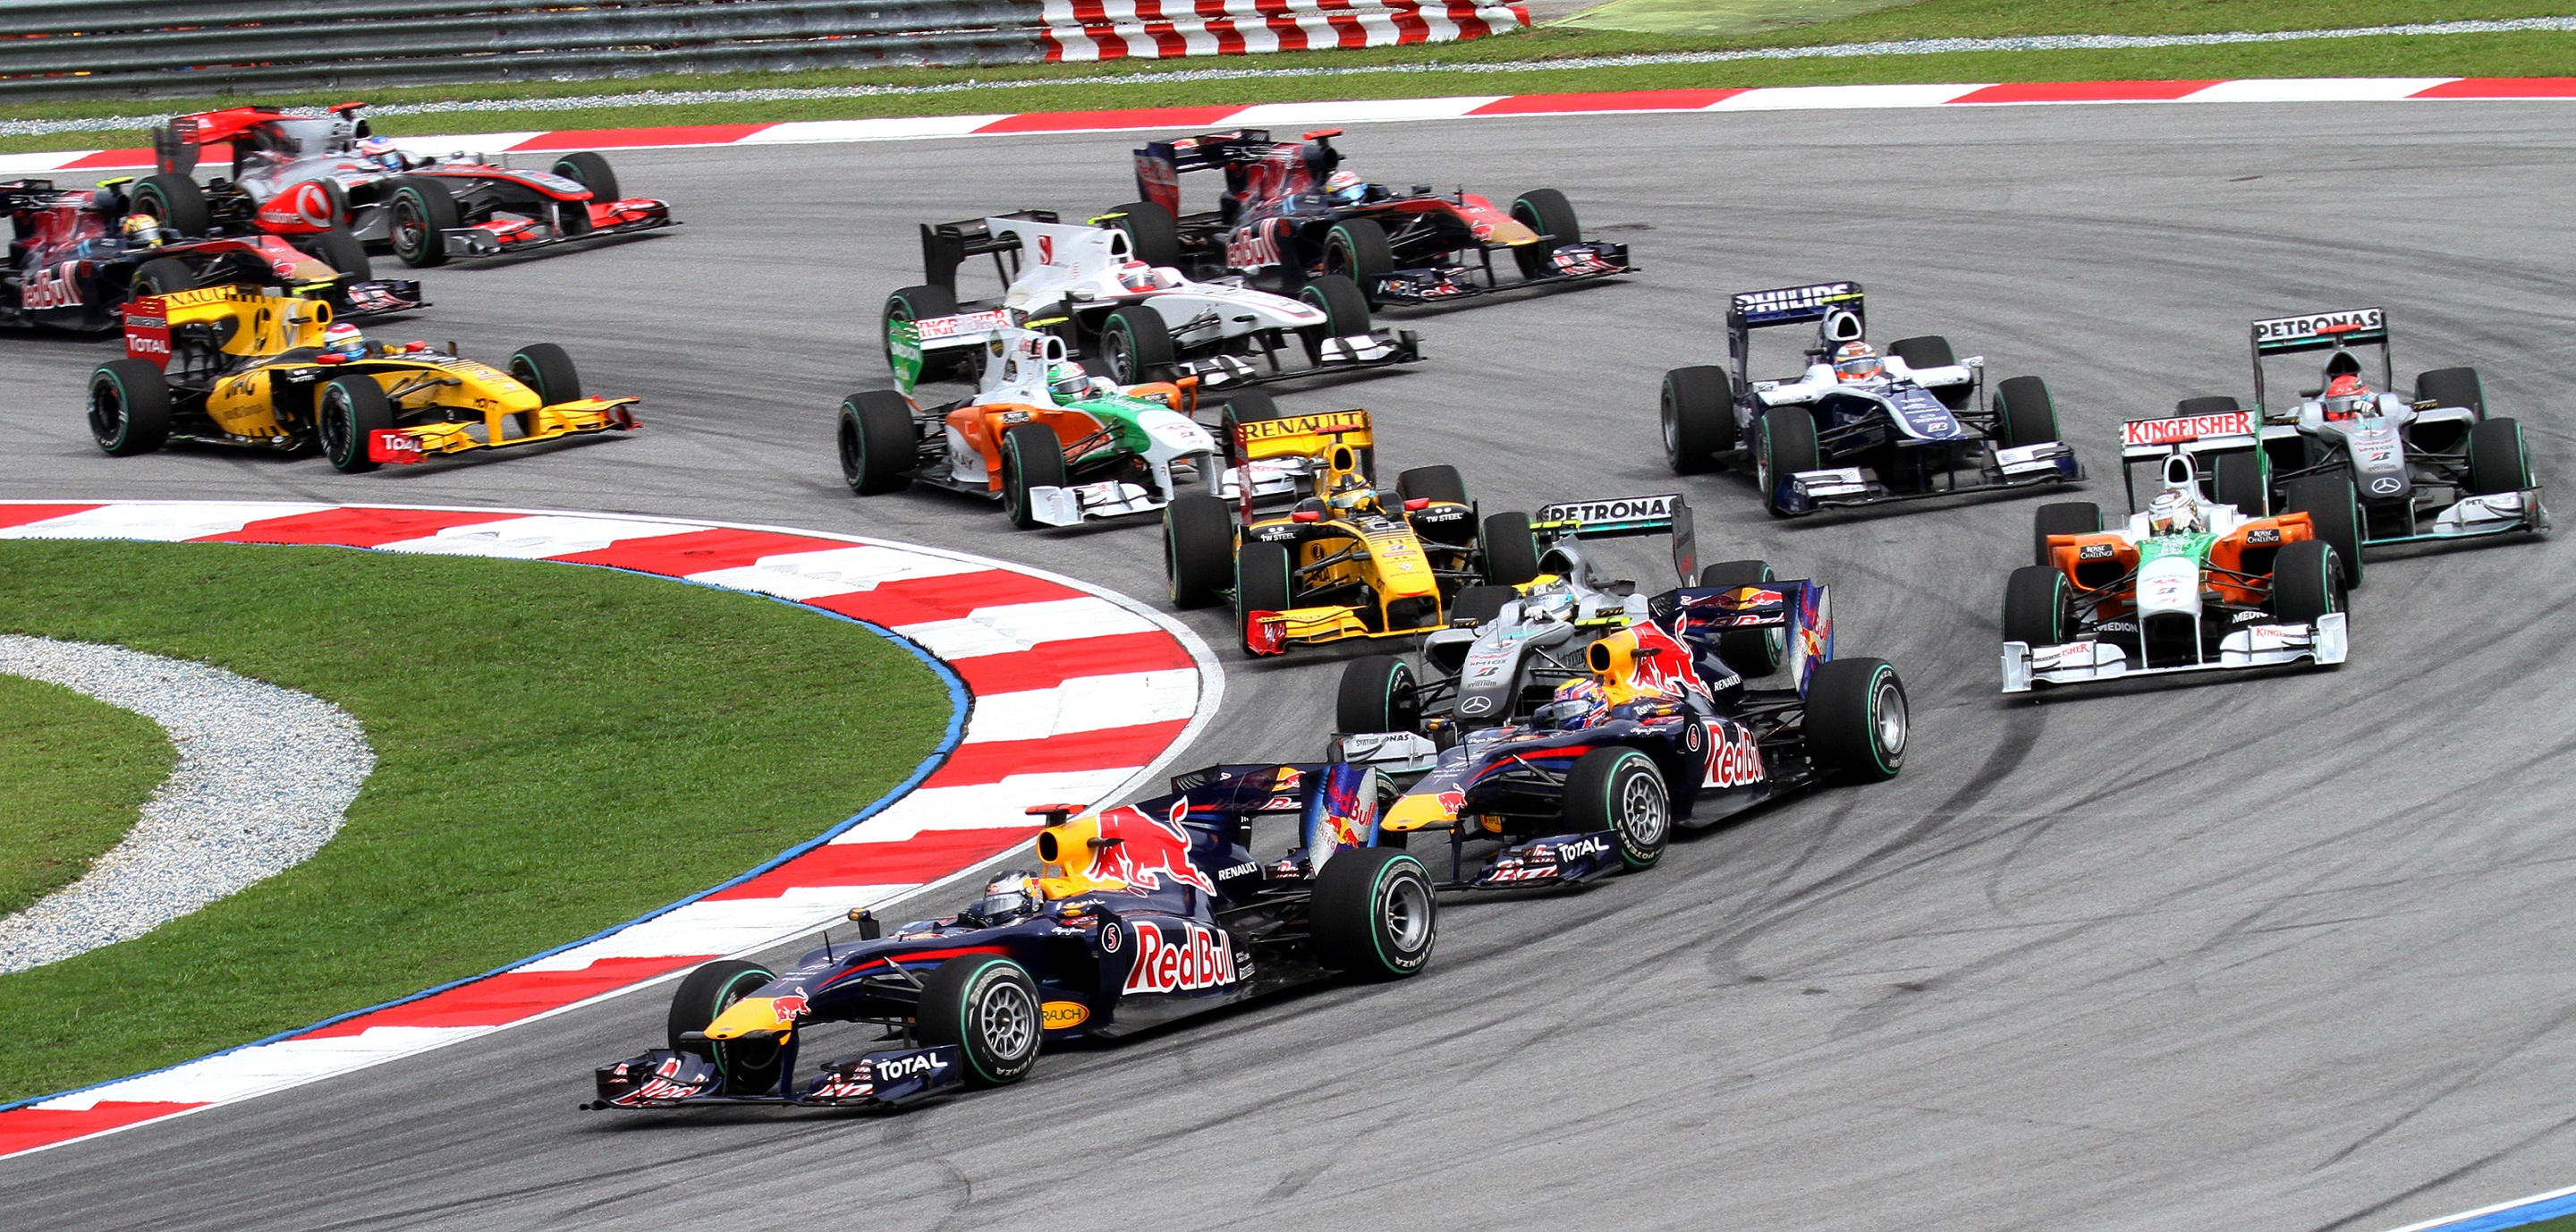 Les chaînes du groupe Canal+ conservent les droits de retransmission de la Formule 1 jusqu'en 2022